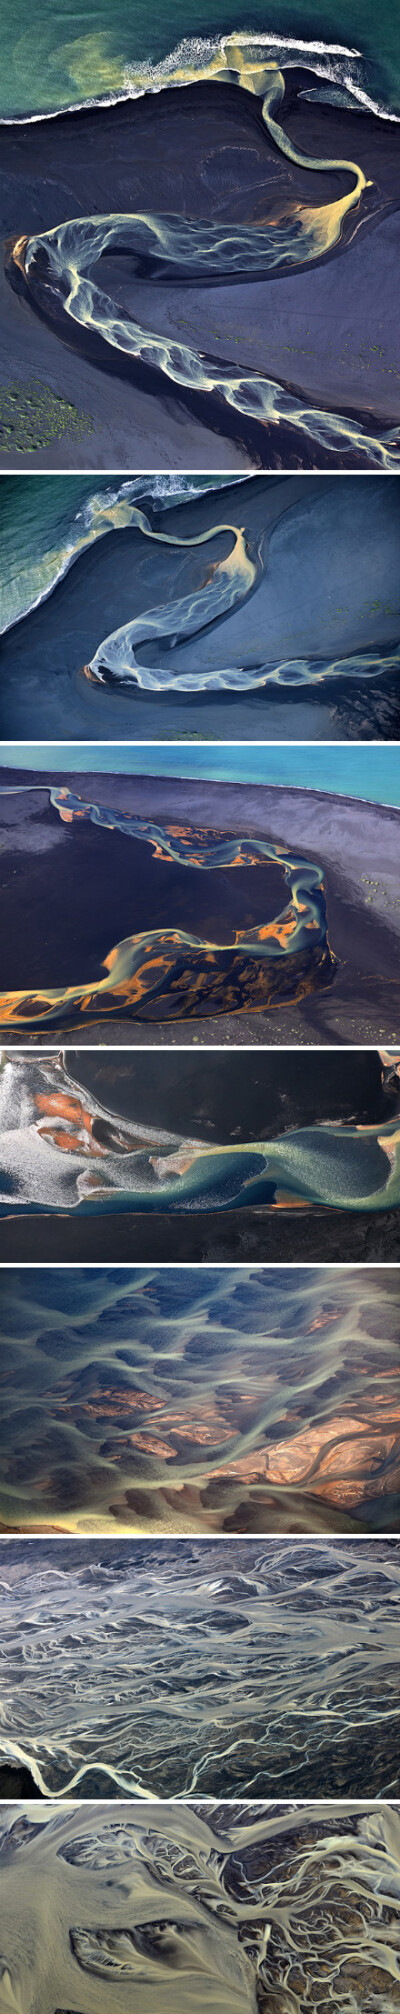 你可能很难相信以下是真实拍摄的图片而非绘画，这是在冰岛从空中拍摄的火山地区河流，水流蜿蜒流过黑色的火山沙，最后进入大海。俄罗斯摄影师Andre Ermolaev说，“真正让我触动的是火山地区的航拍，这些河流有着难以…